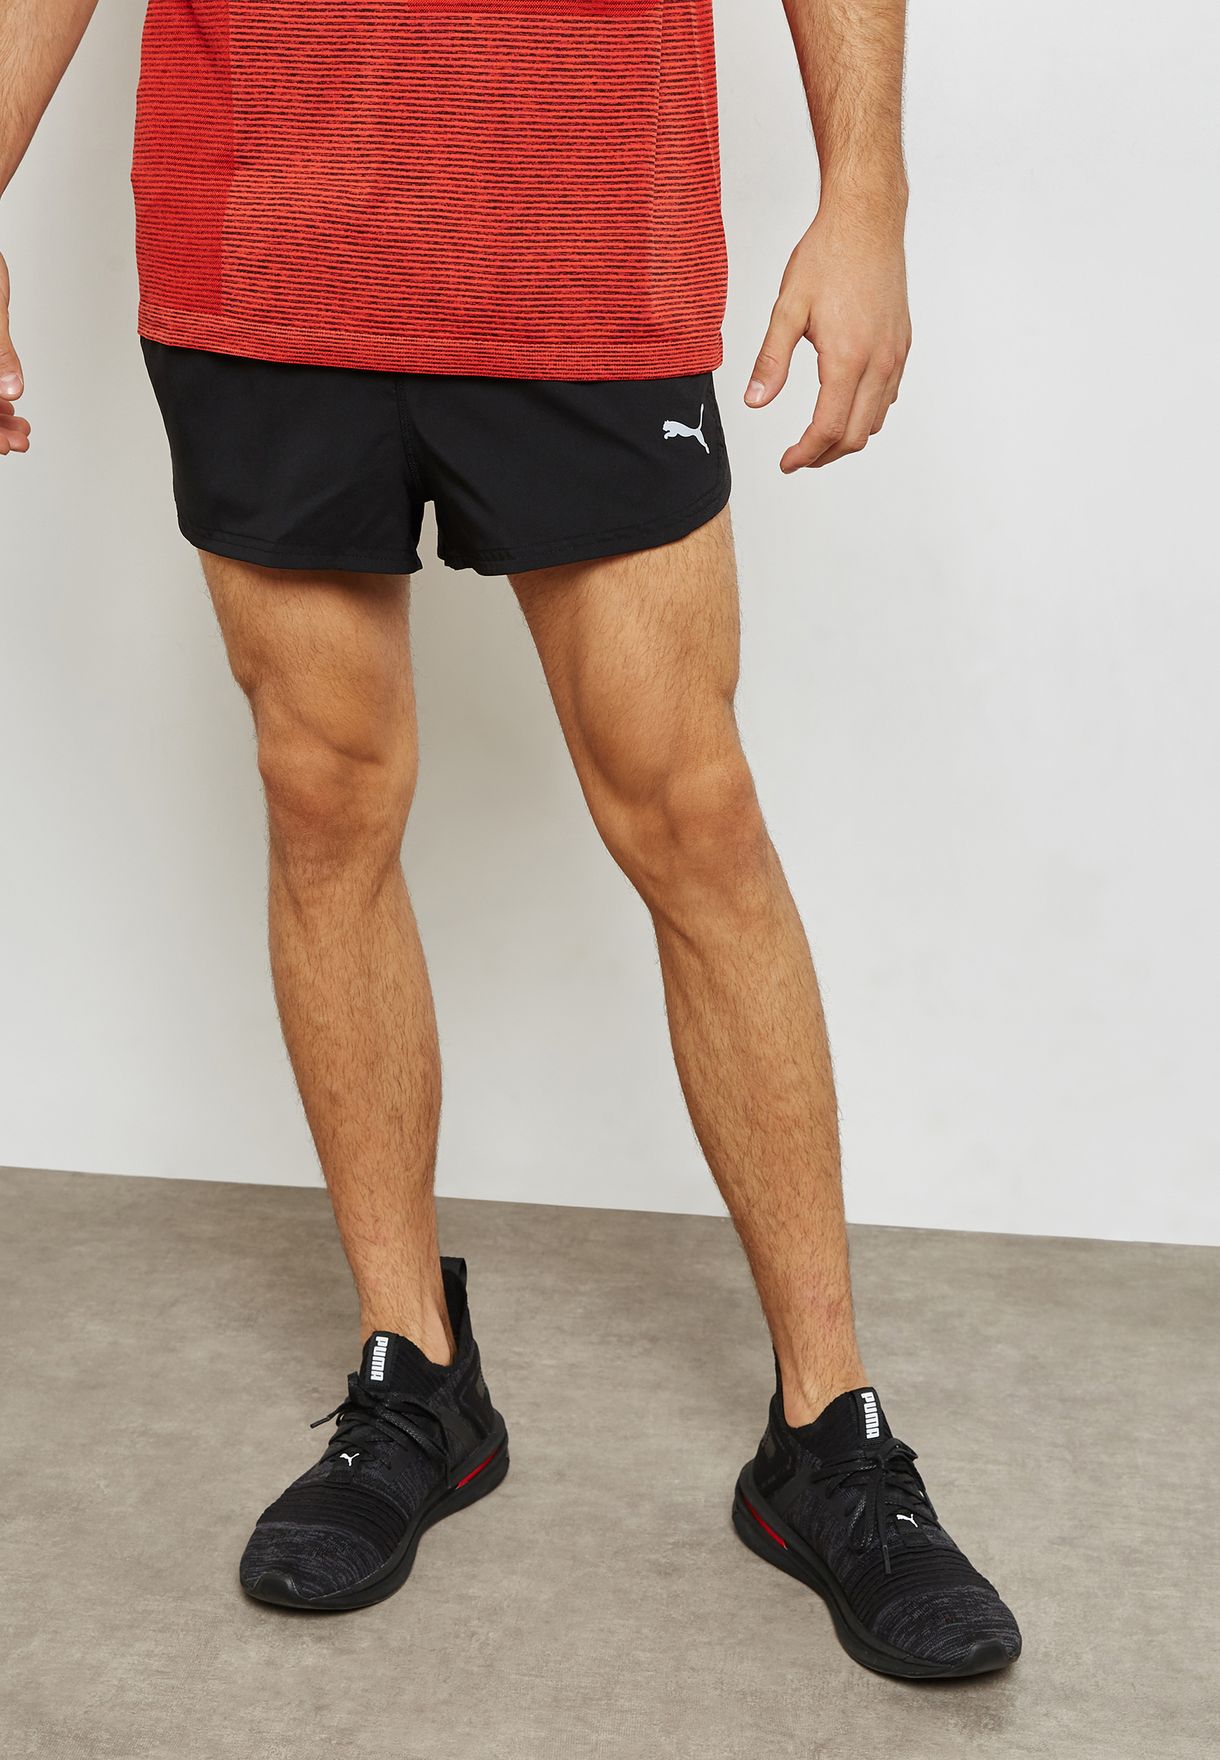 puma split shorts